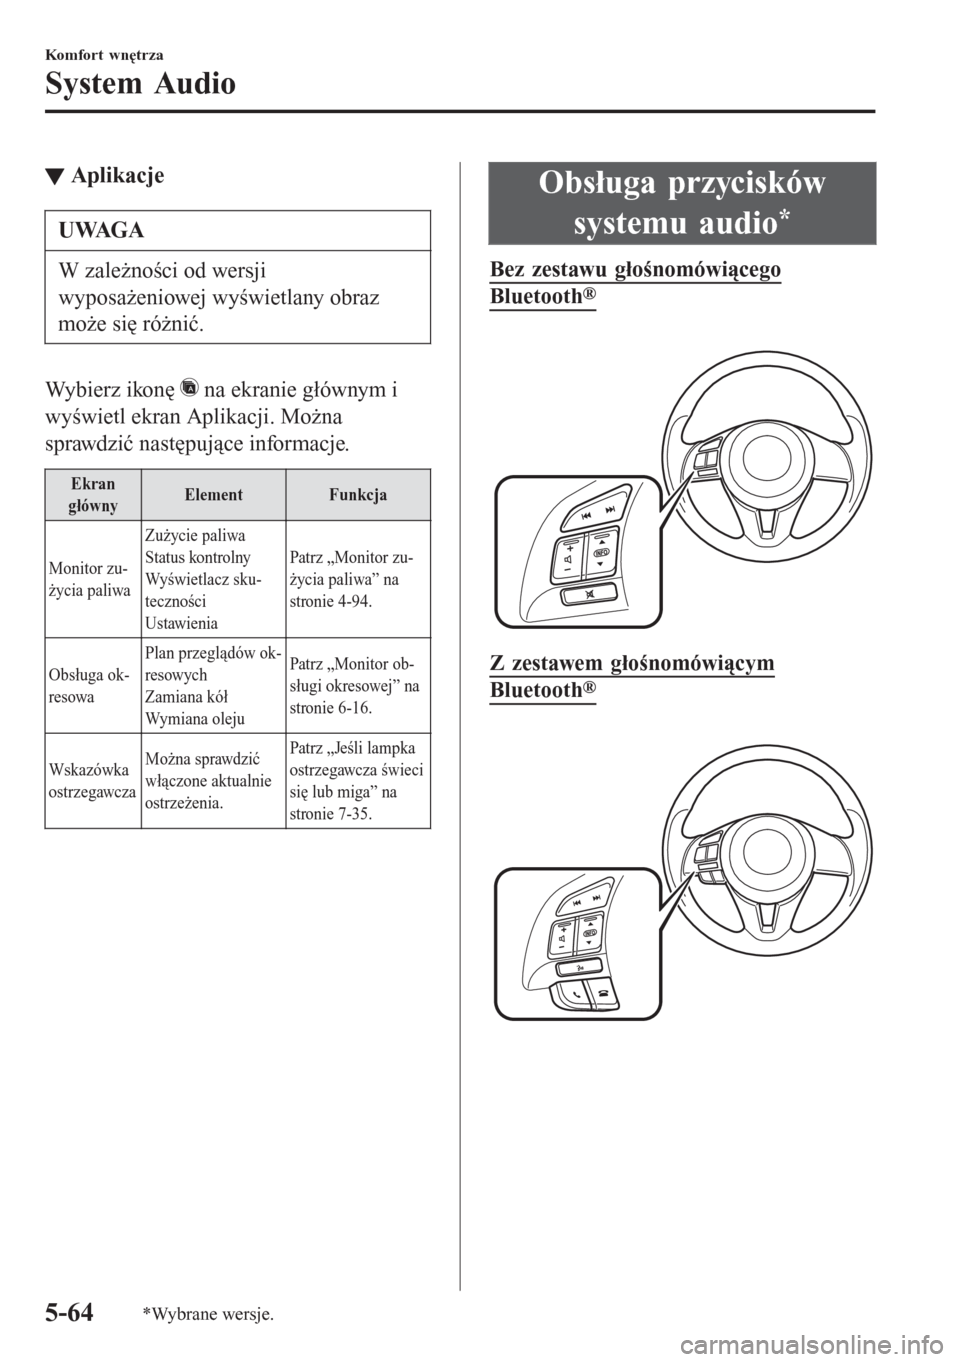 MAZDA MODEL CX-3 2016  Instrukcja Obsługi (in Polish) tAplikacje
UWAGA
W zależności od wersji
wyposażeniowej wyświetlany obraz
może się różnić.
Wybierz ikonę  na ekranie głównym i
wyświetl ekran Aplikacji. Można
sprawdzić następujące inf